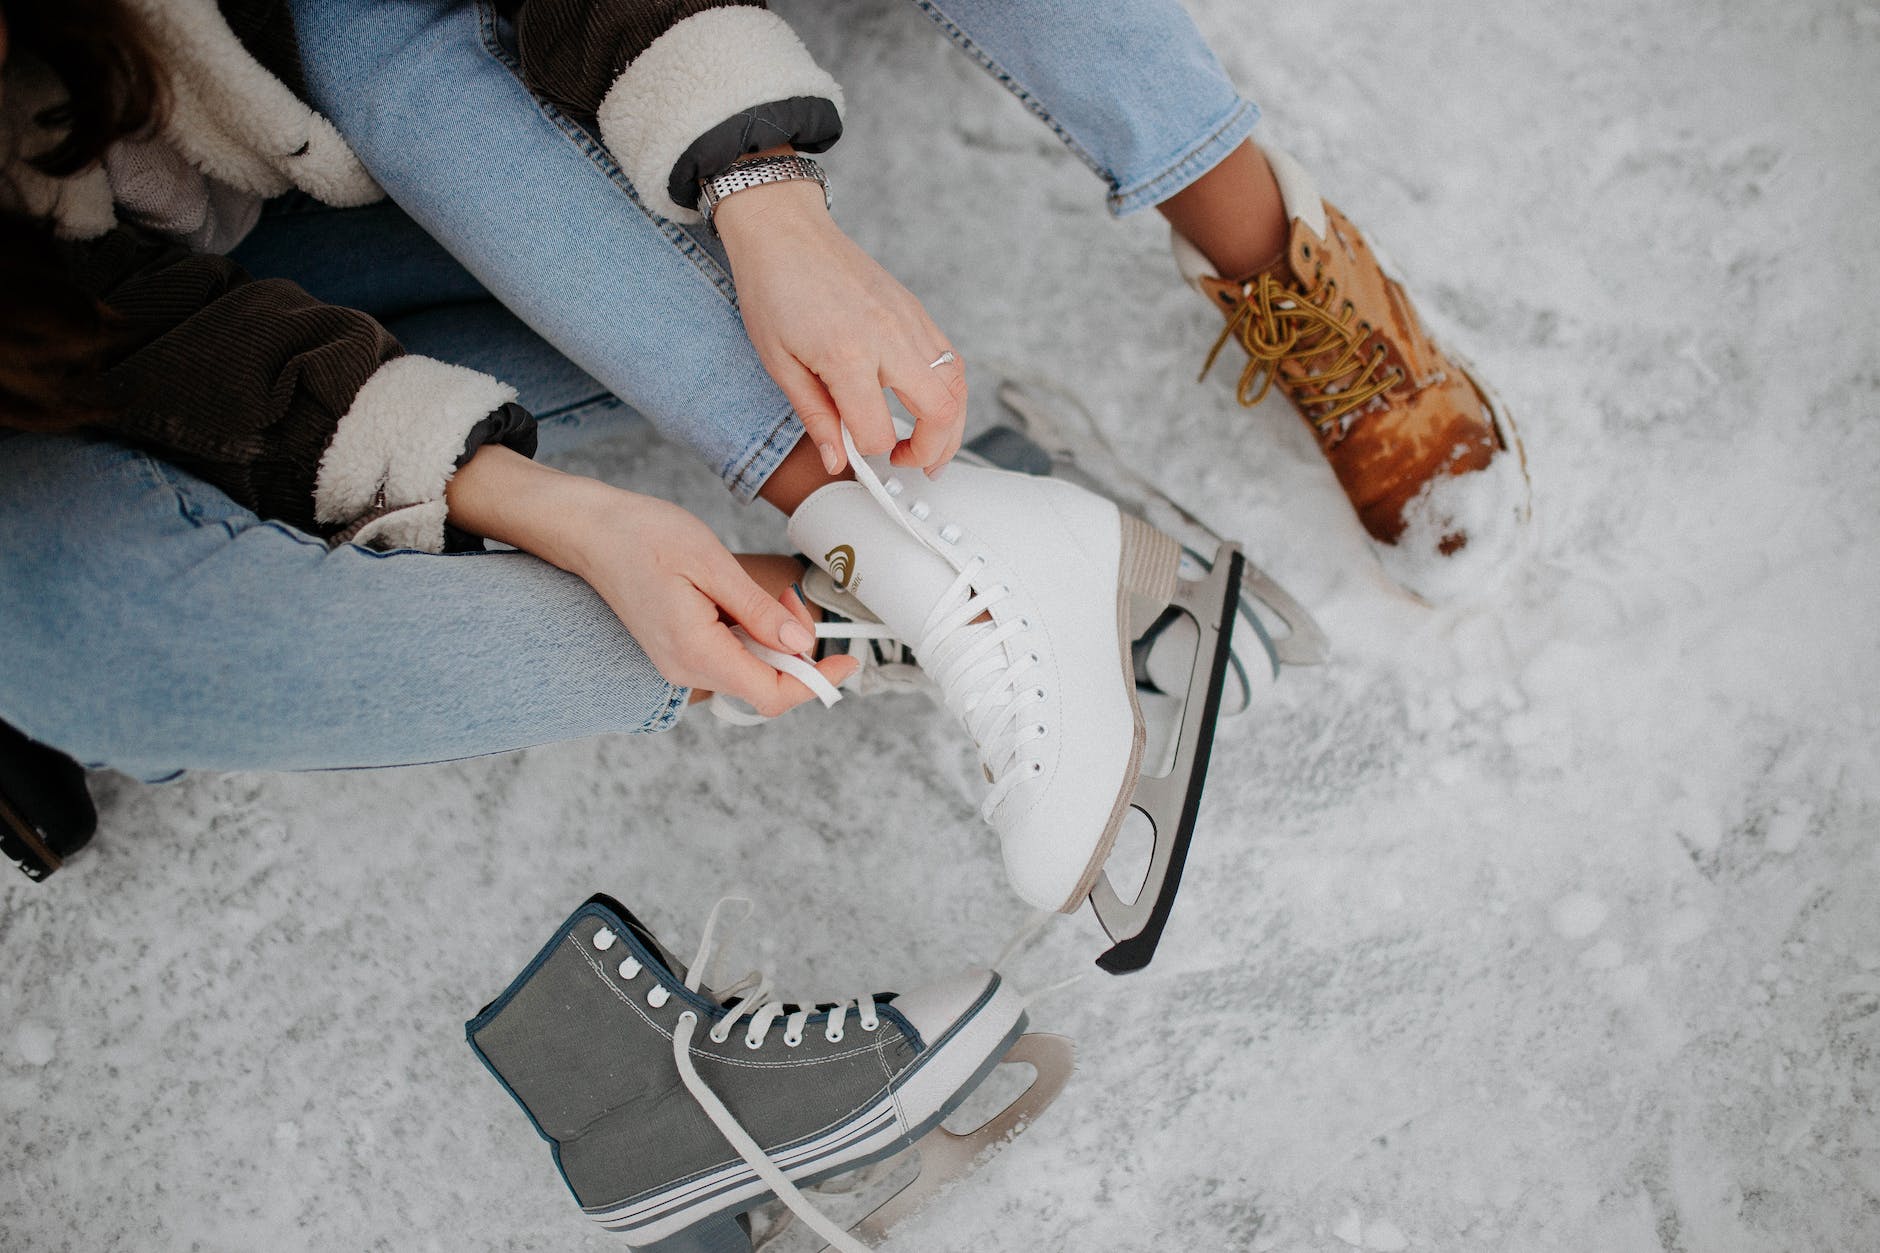 women tying shoelaces on ice skates